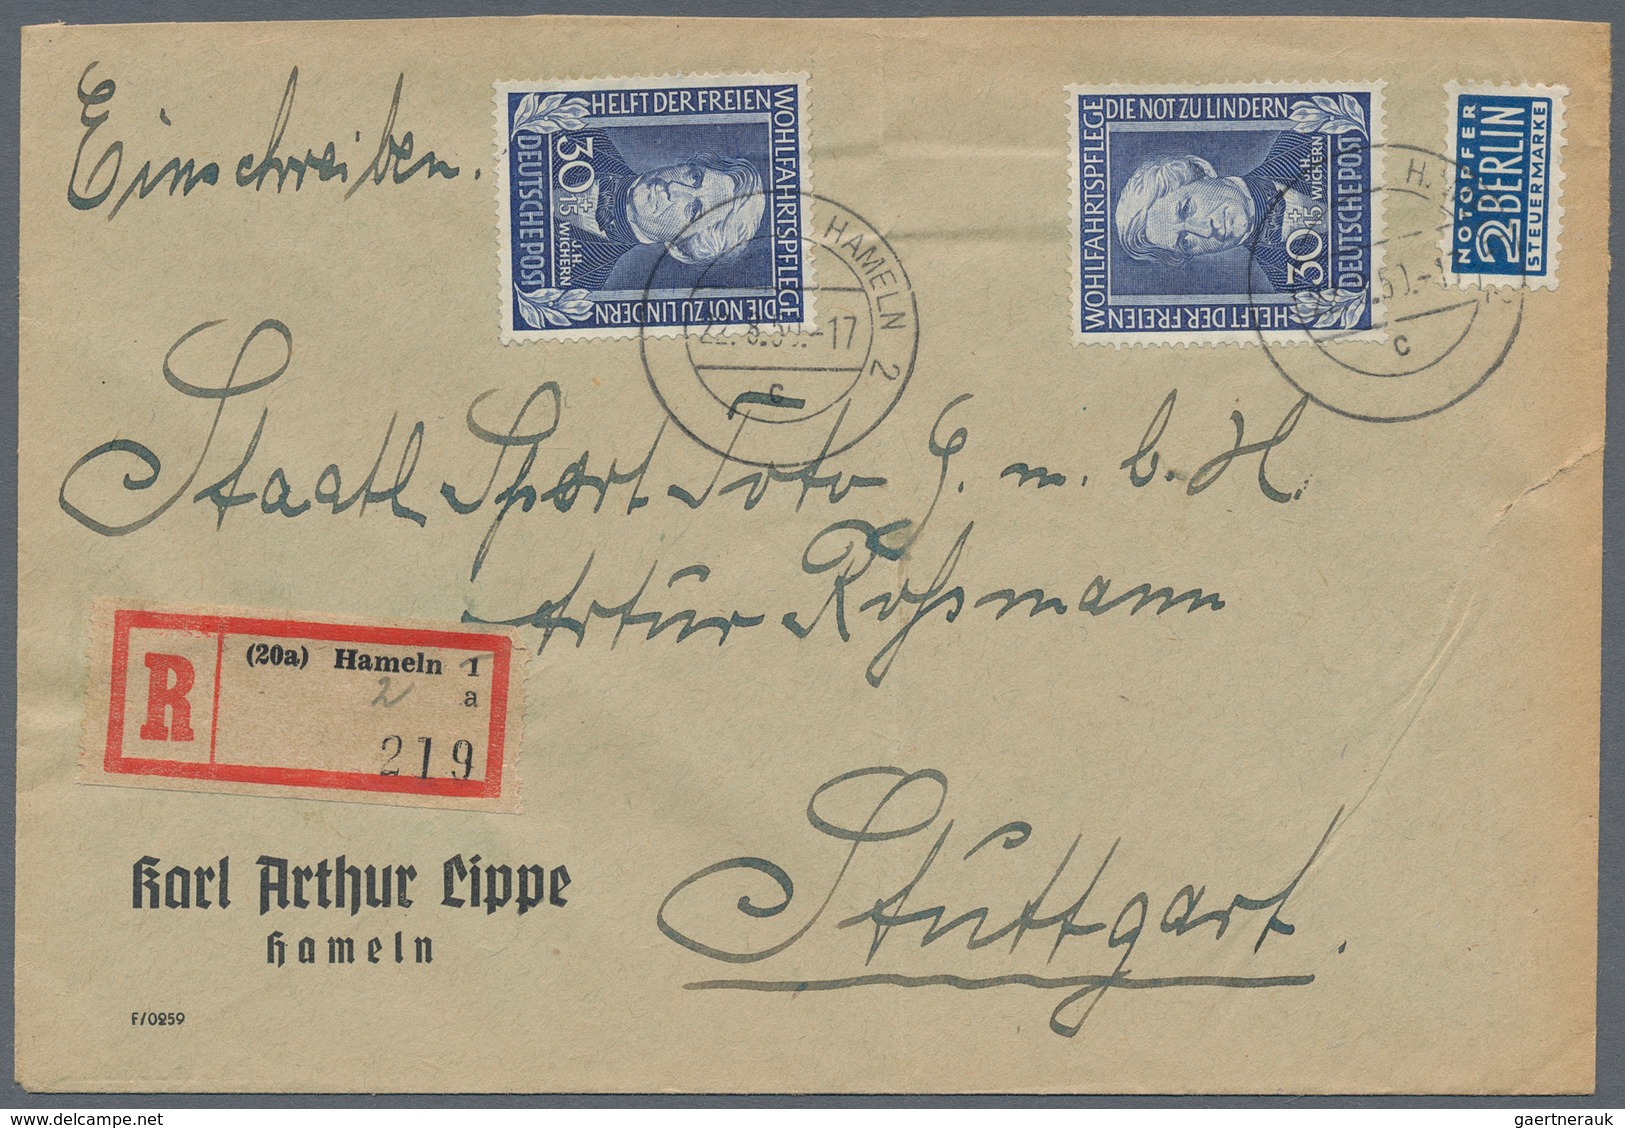 Bundesrepublik Deutschland: 1950/1960 (ca.), vielseitiger Posten von ca. 180 Briefen und Karten mit